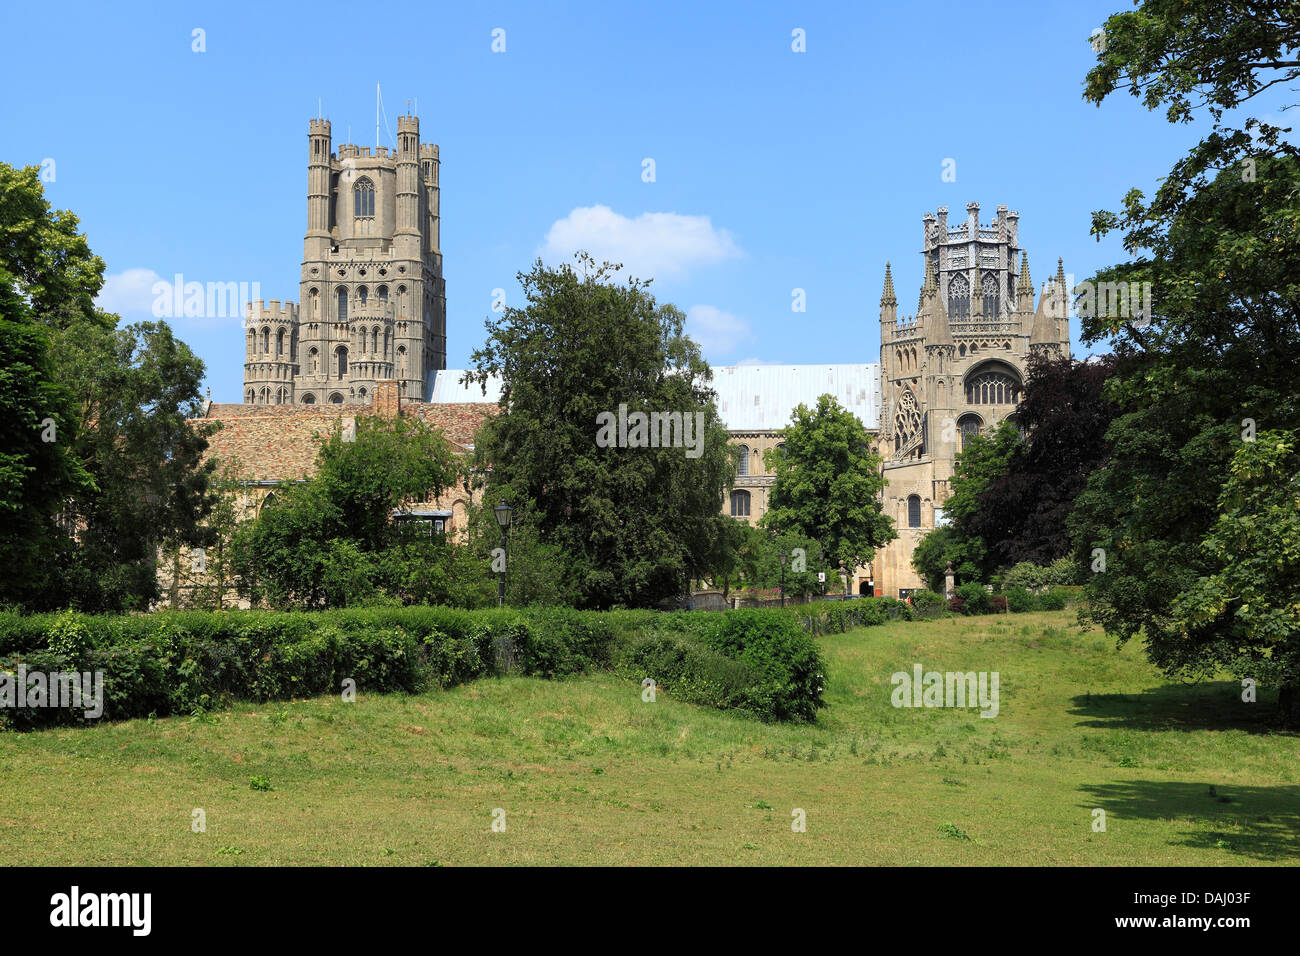 Cathédrale d'Ely, tour ouest et l'octogone, Cambridgeshire England UK Anglais cathédrales médiévales Banque D'Images